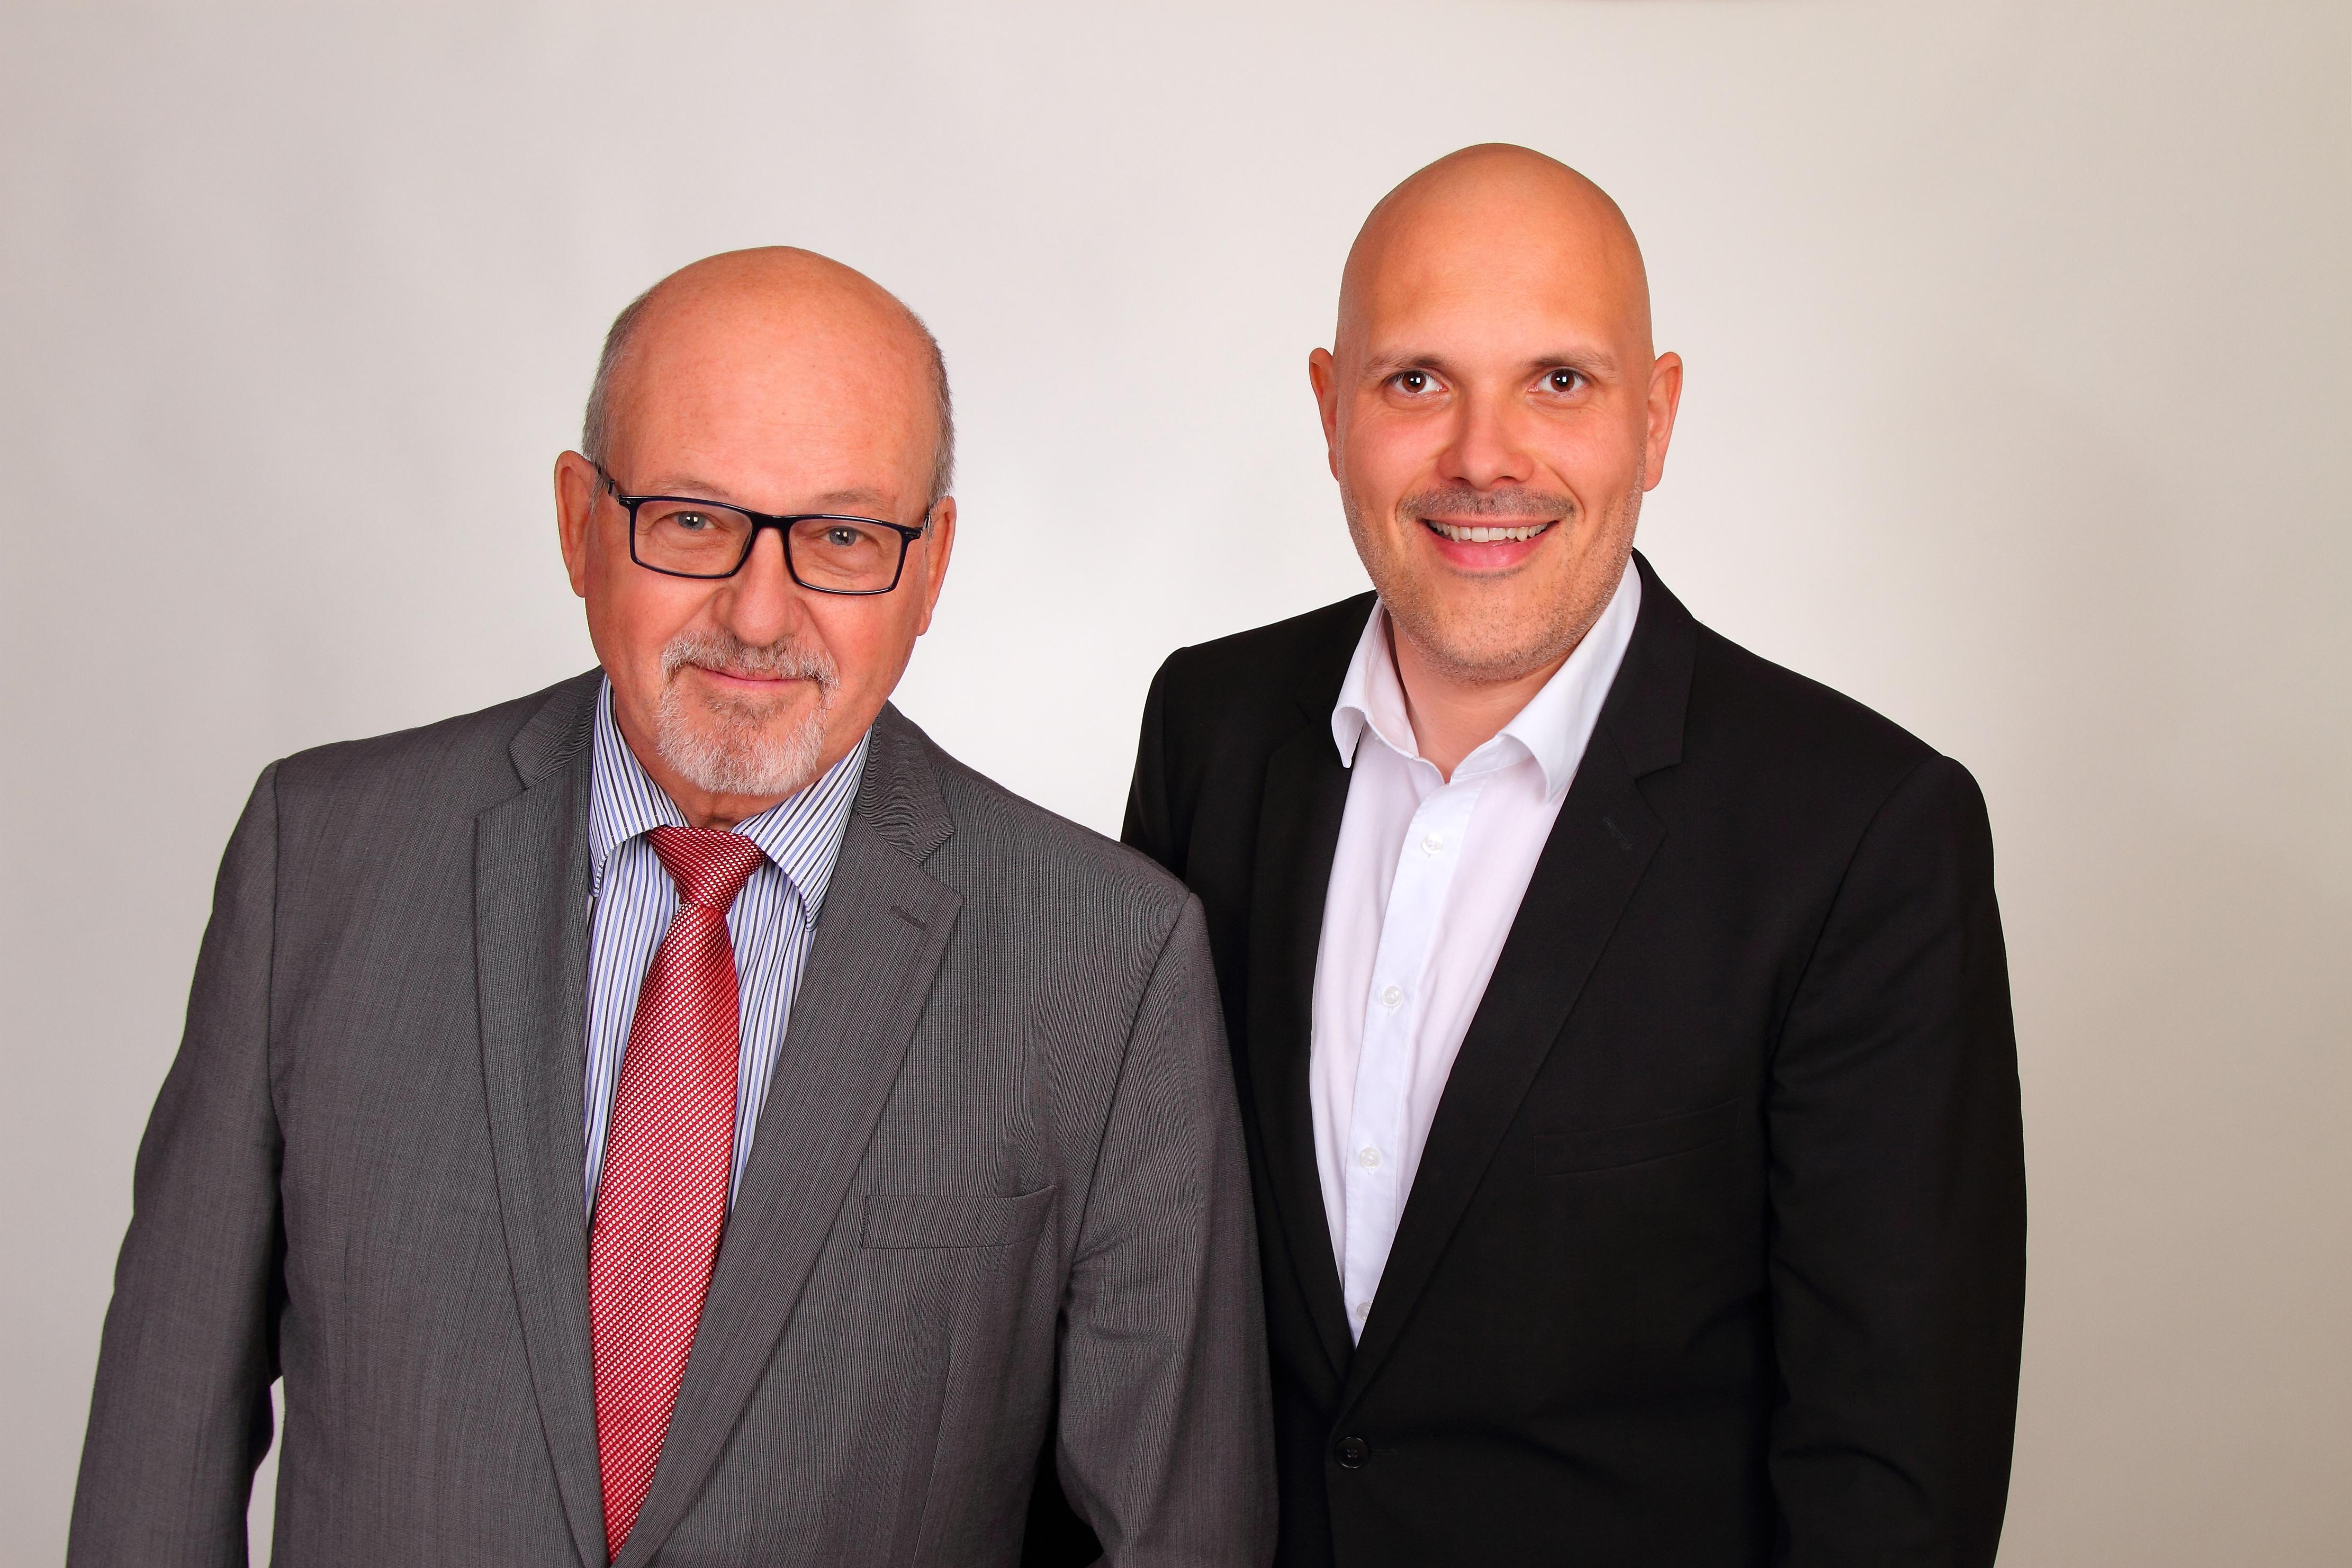 Regionaldirektoren Christian Prasser und Edgar Schultz